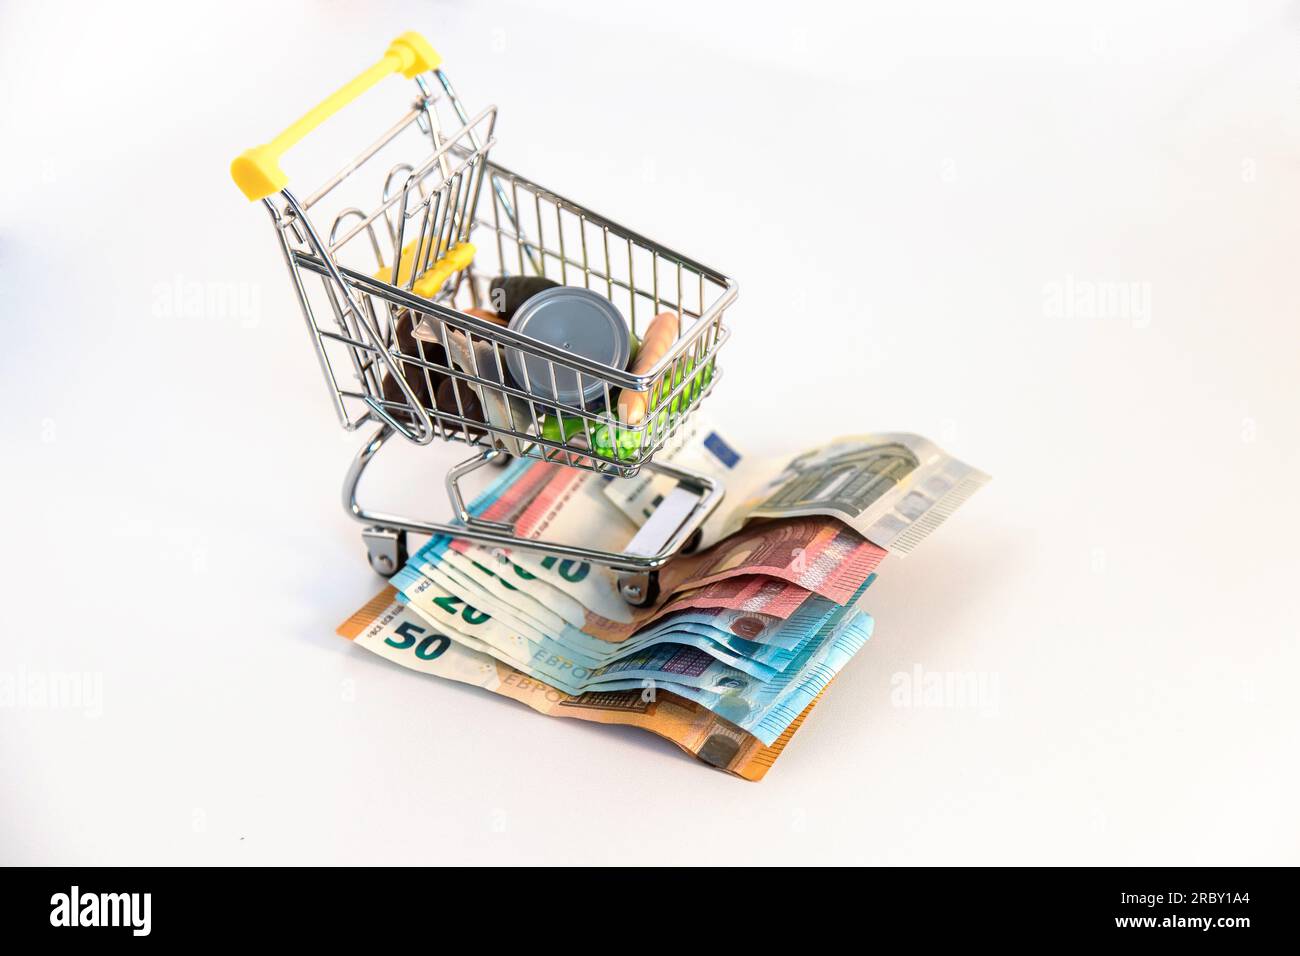 Supermarkt-Einkaufswagen mit wichtigen Waren und mehreren Euro-Banknoten auf weißem Hintergrund. Konzeptionelles Bild der Kaufkraft. Stockfoto